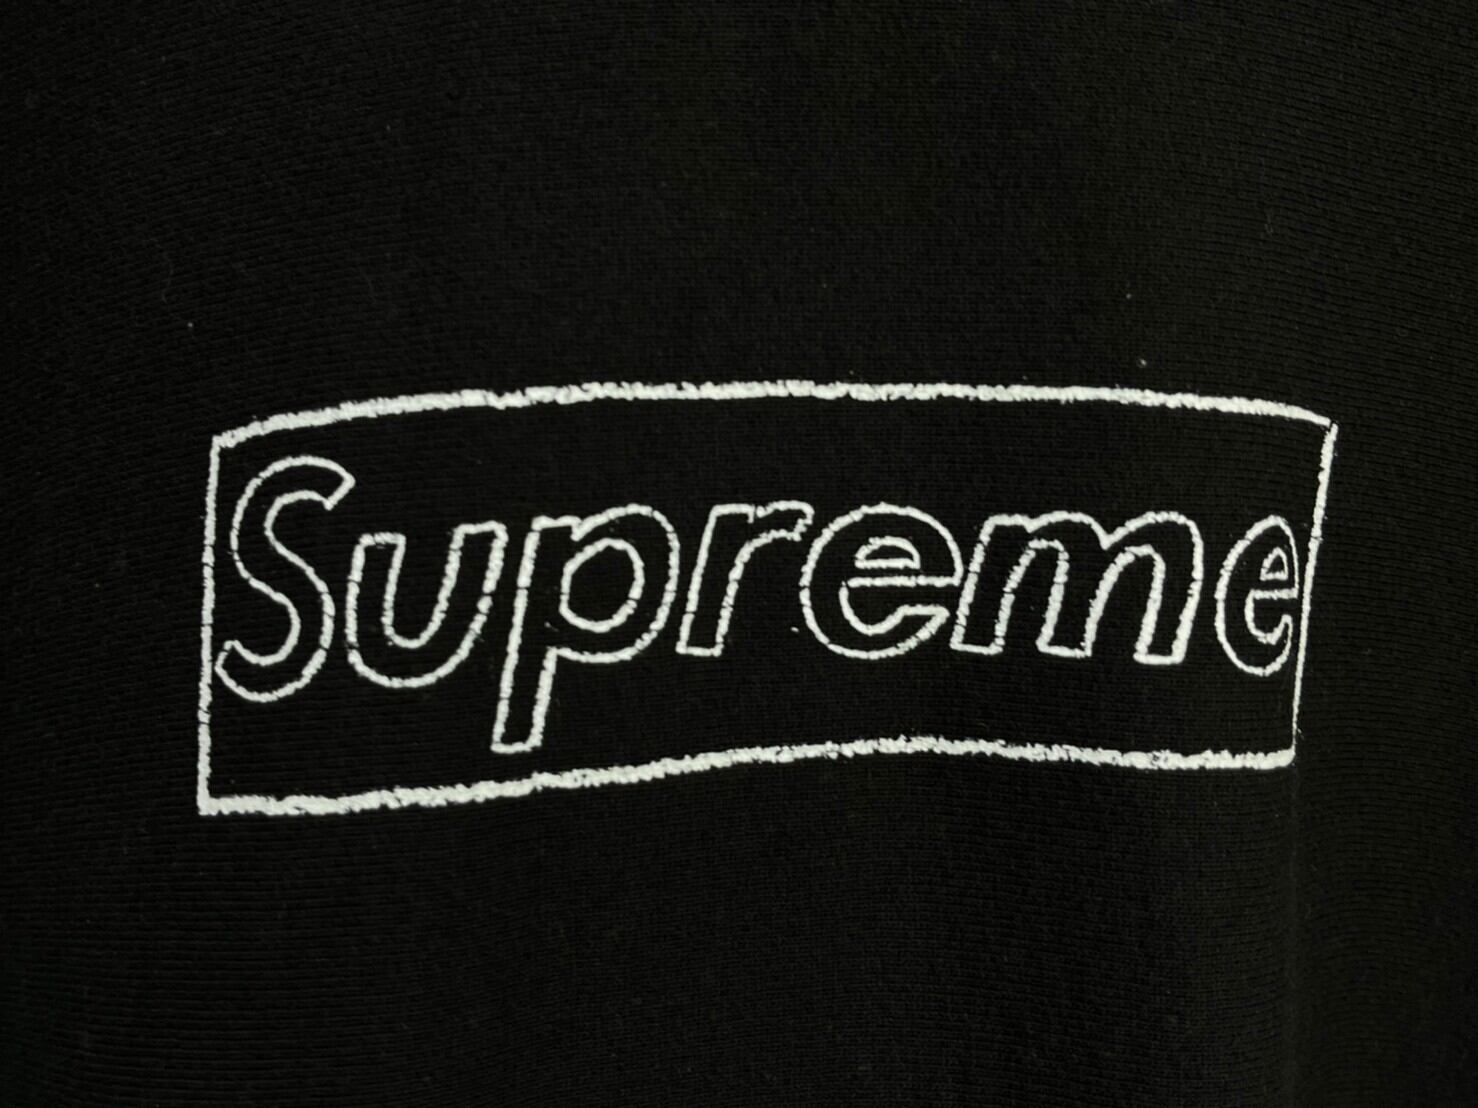 Supreme KAWS Chalk Logo Tee Lサイズ 黒